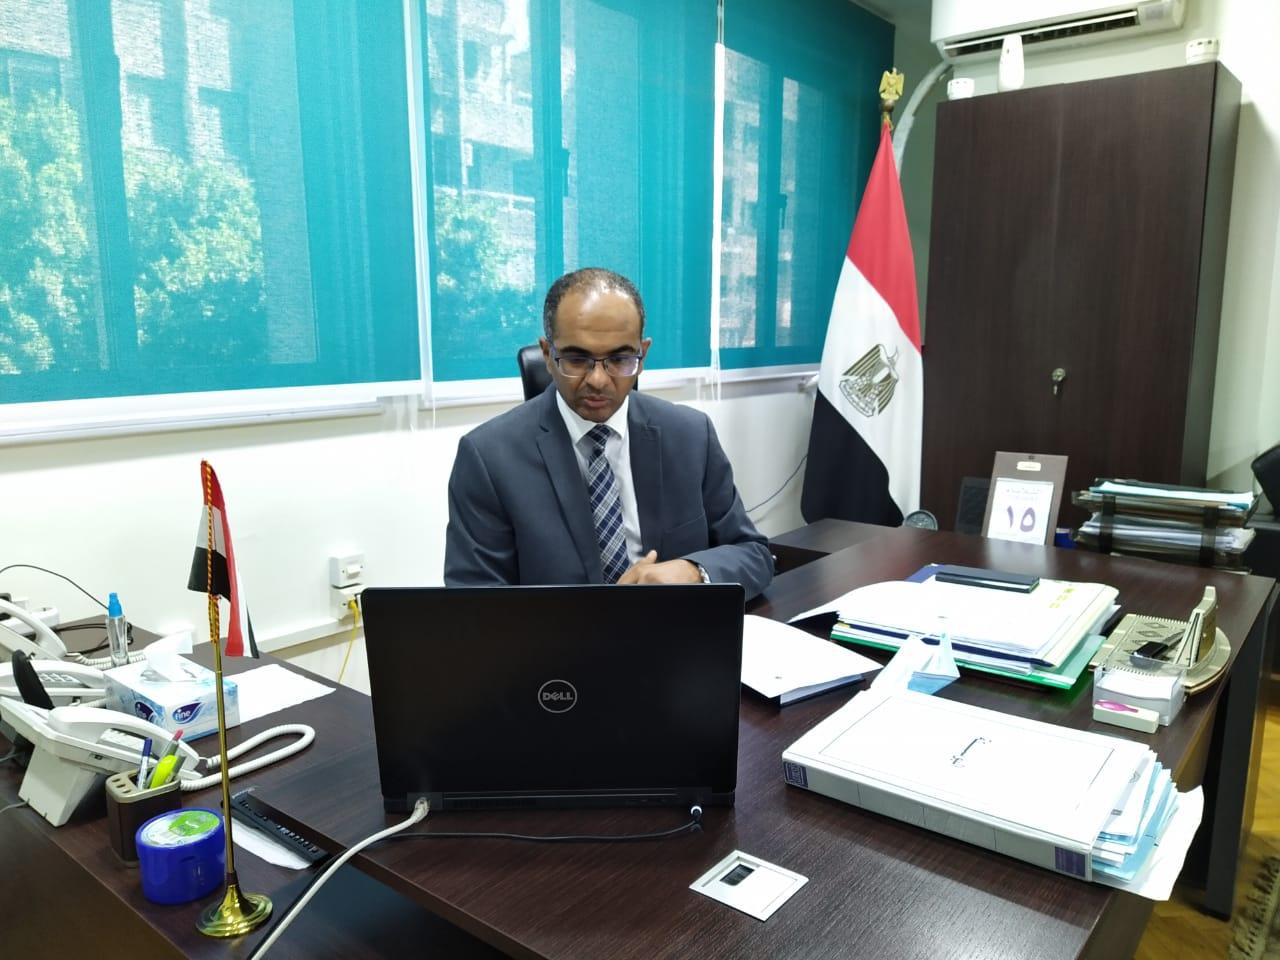   نائب وزير الإسكان يتابع مشروع تحسين جودة المياه محافظات كفر الشيخ والدقهلية والغربية